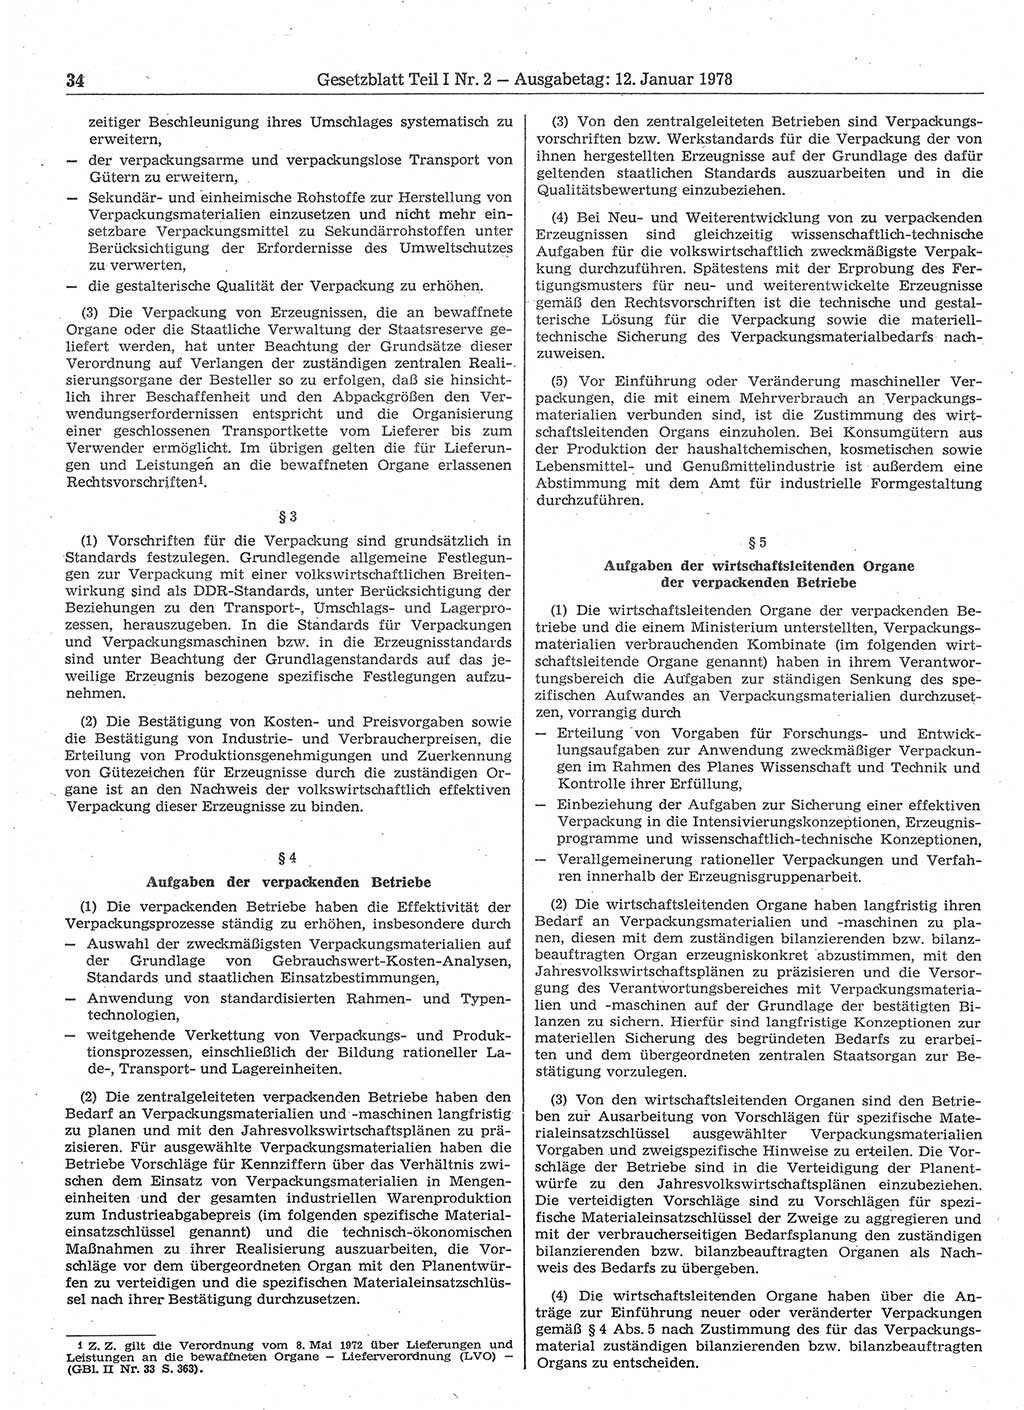 Gesetzblatt (GBl.) der Deutschen Demokratischen Republik (DDR) Teil Ⅰ 1978, Seite 34 (GBl. DDR Ⅰ 1978, S. 34)